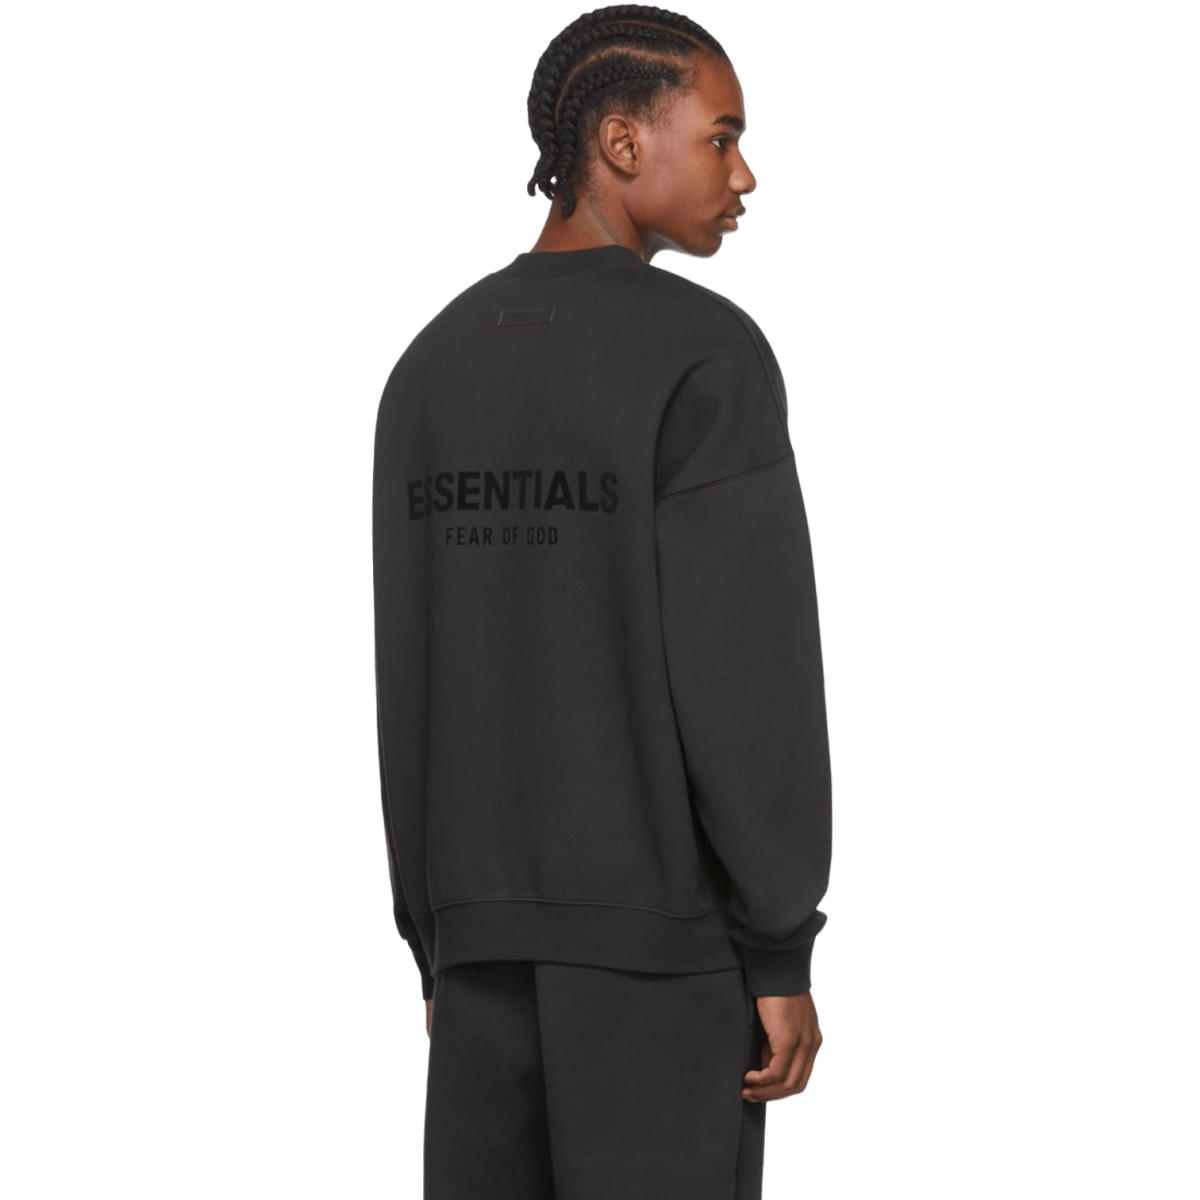 Essentials Fear of God Crew Black Sweatshirt - Black Letters - Sweatshirt - Jawns on Fire Sneakers & Streetwear